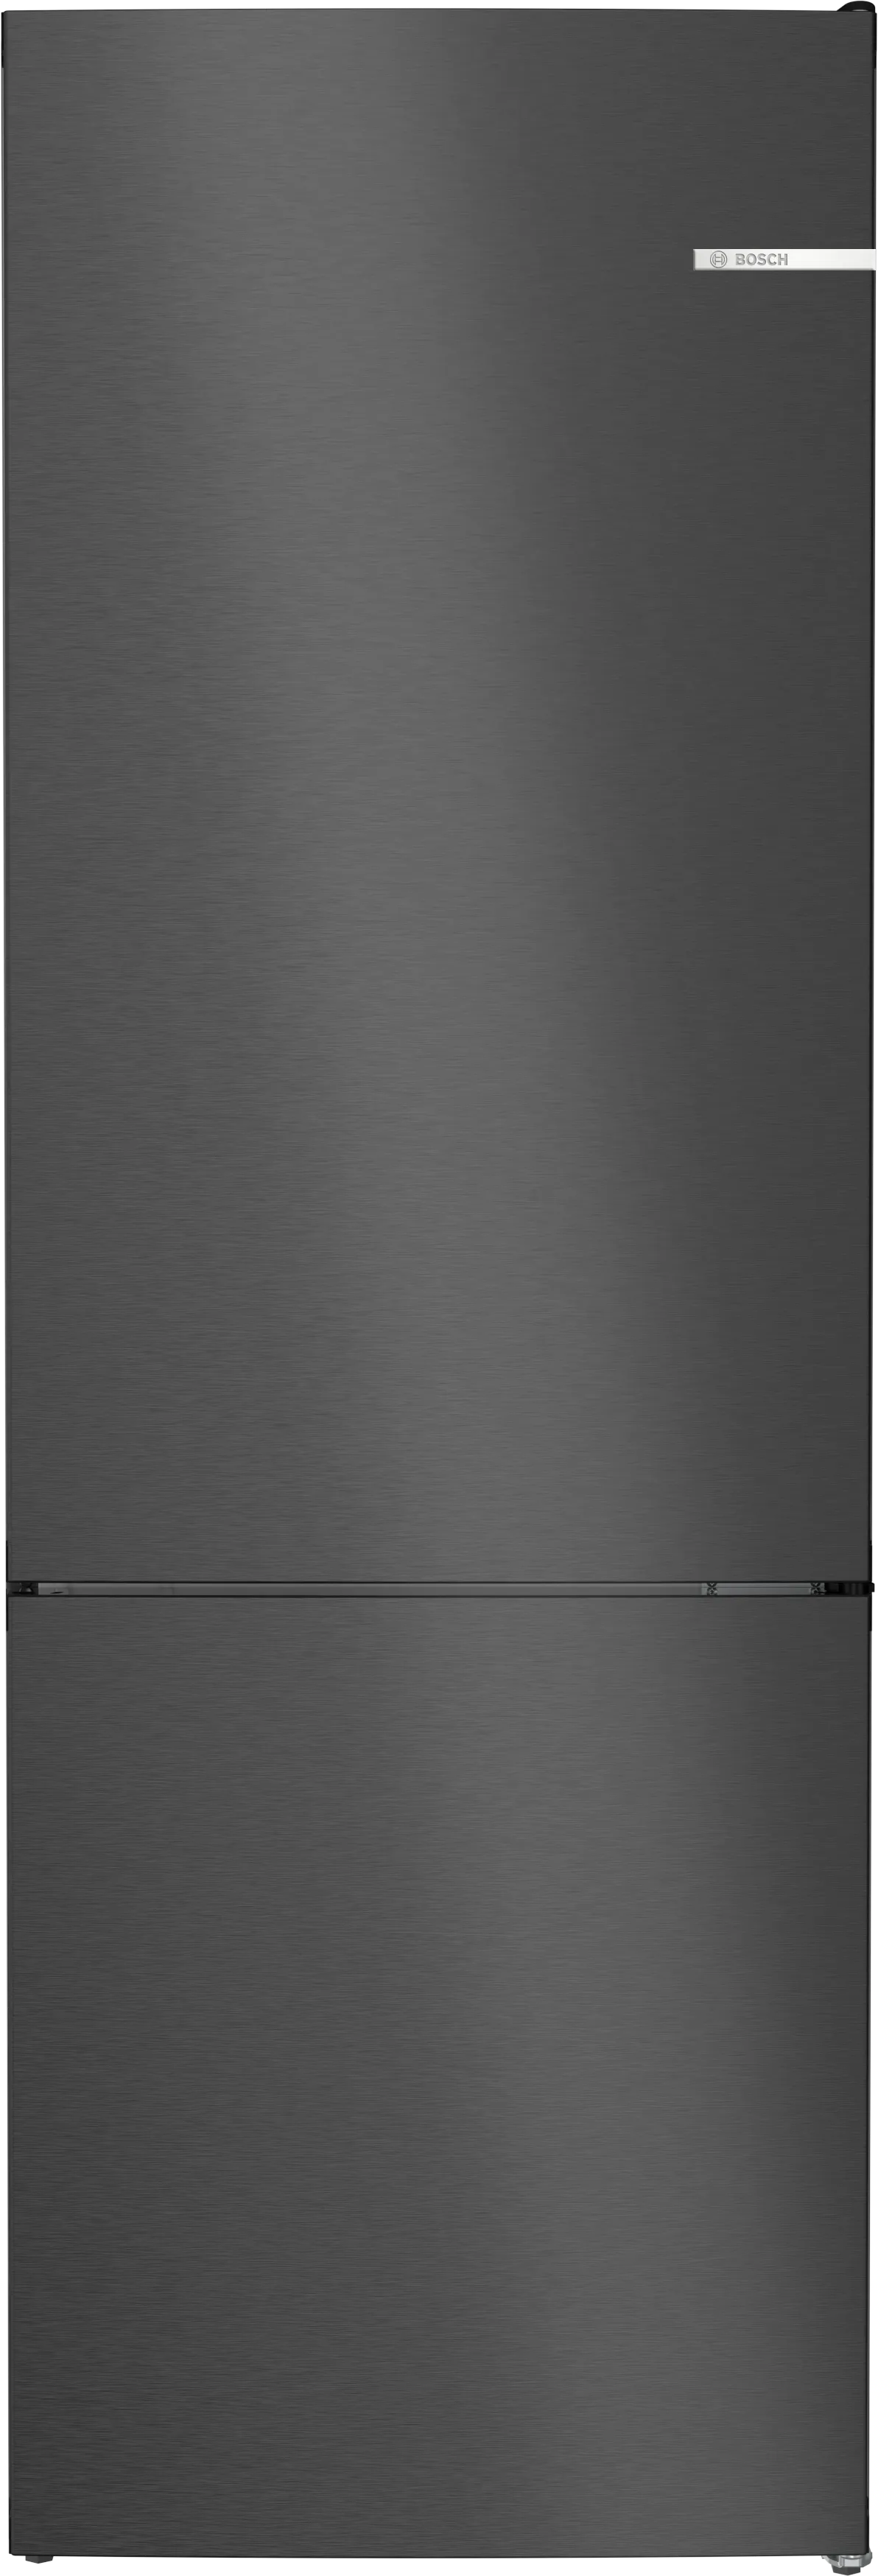 Serie 4 Volně stojící chladnička s mrazákem dole 203 x 70 cm černá matná ocel s úpravou proti otiskům prstů 